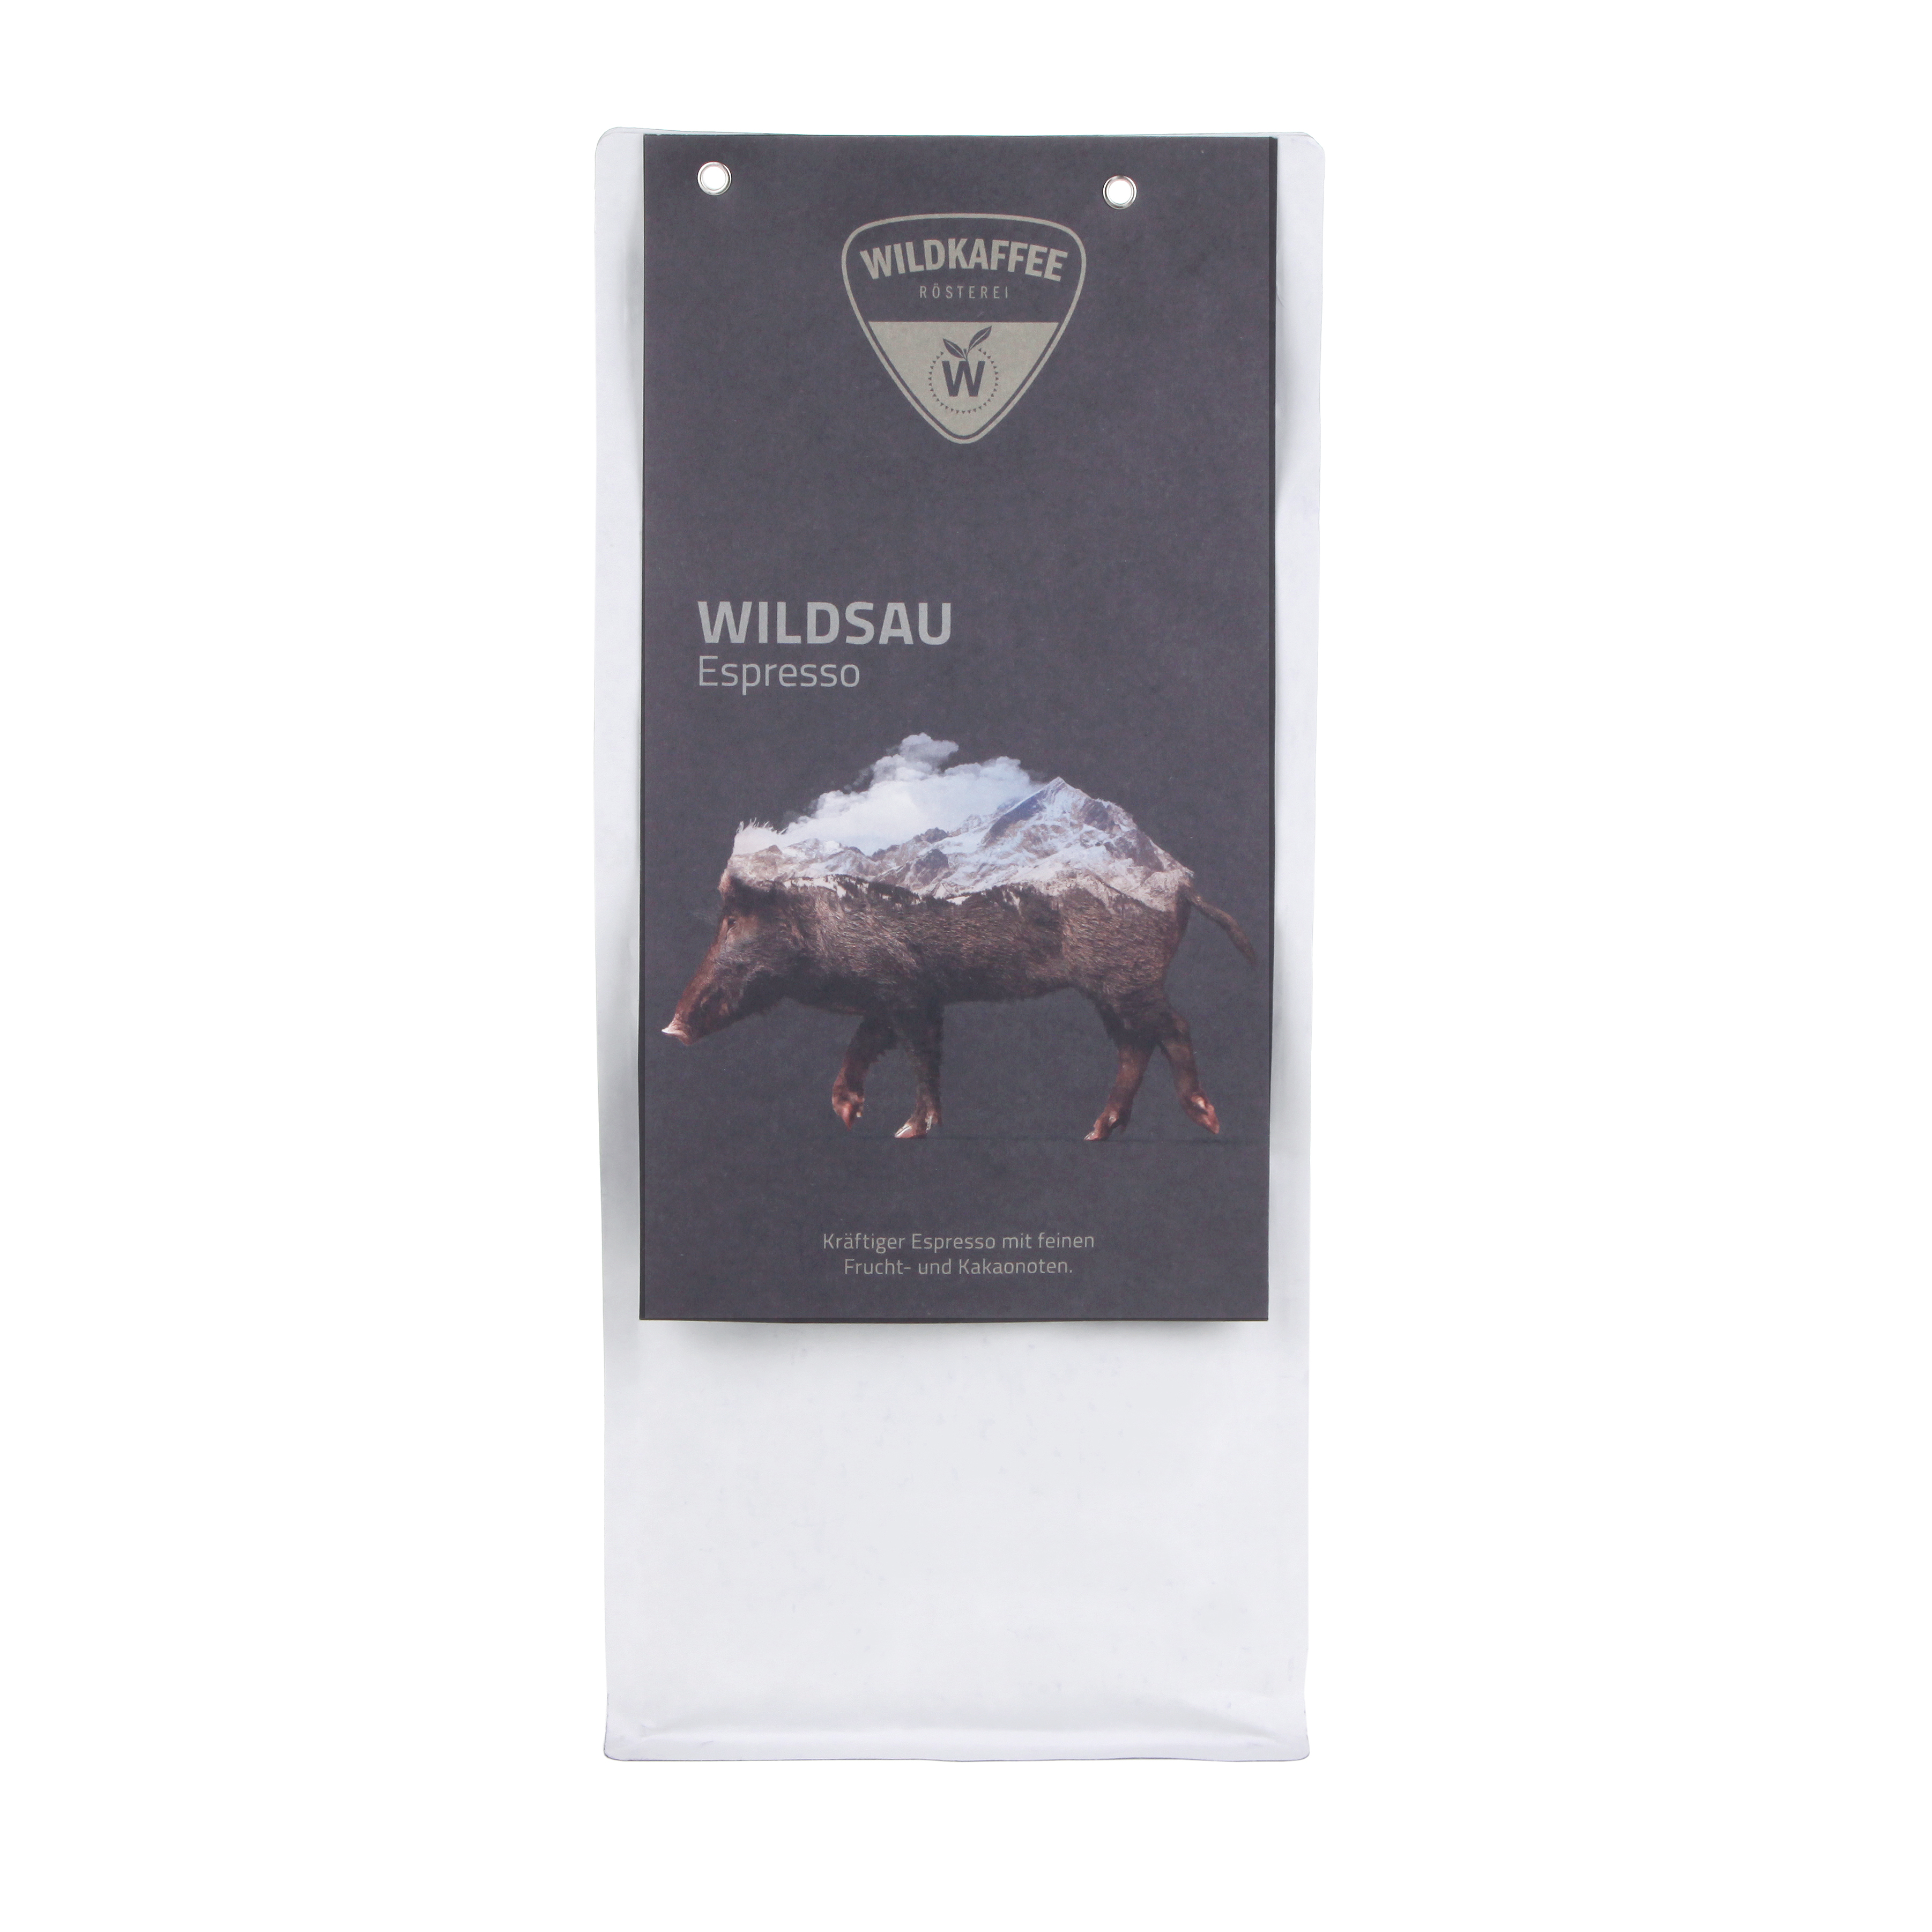 Wildkaffee Wildsau Espresso